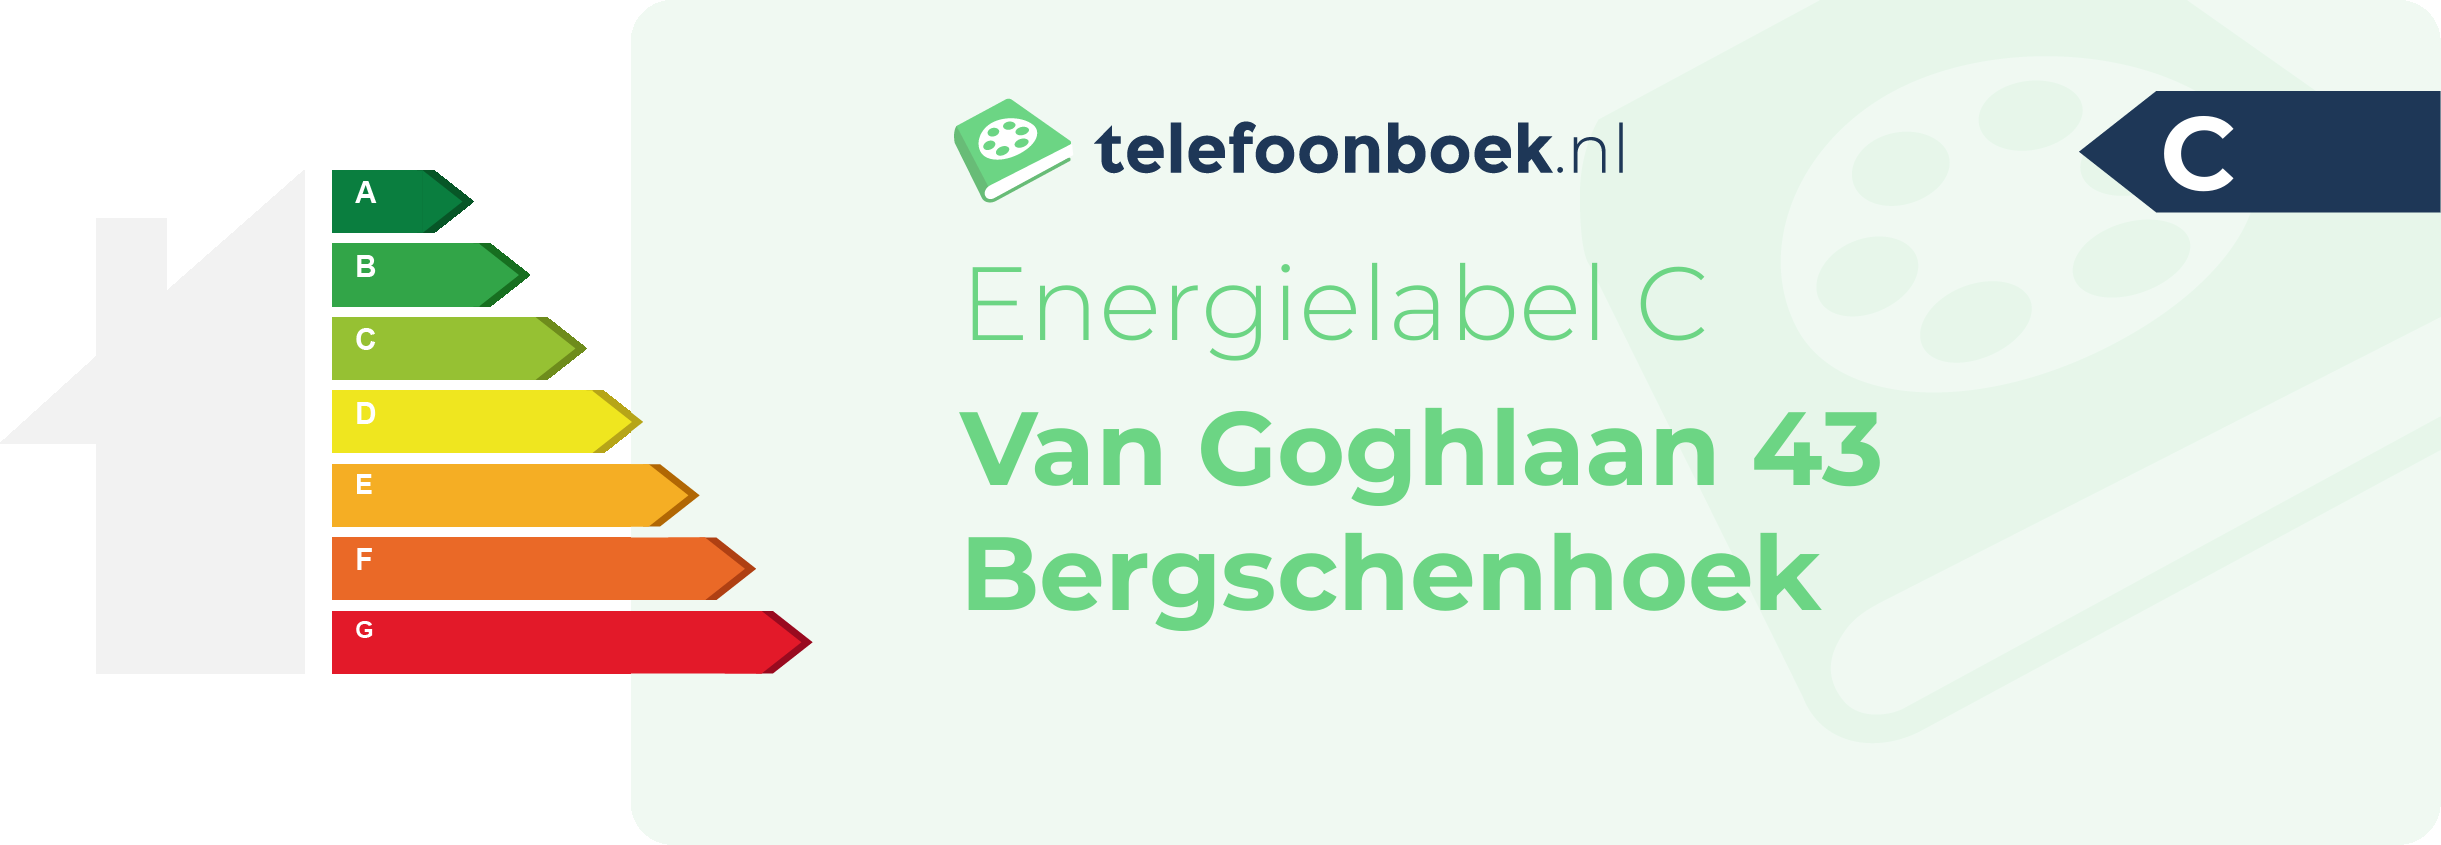 Energielabel Van Goghlaan 43 Bergschenhoek